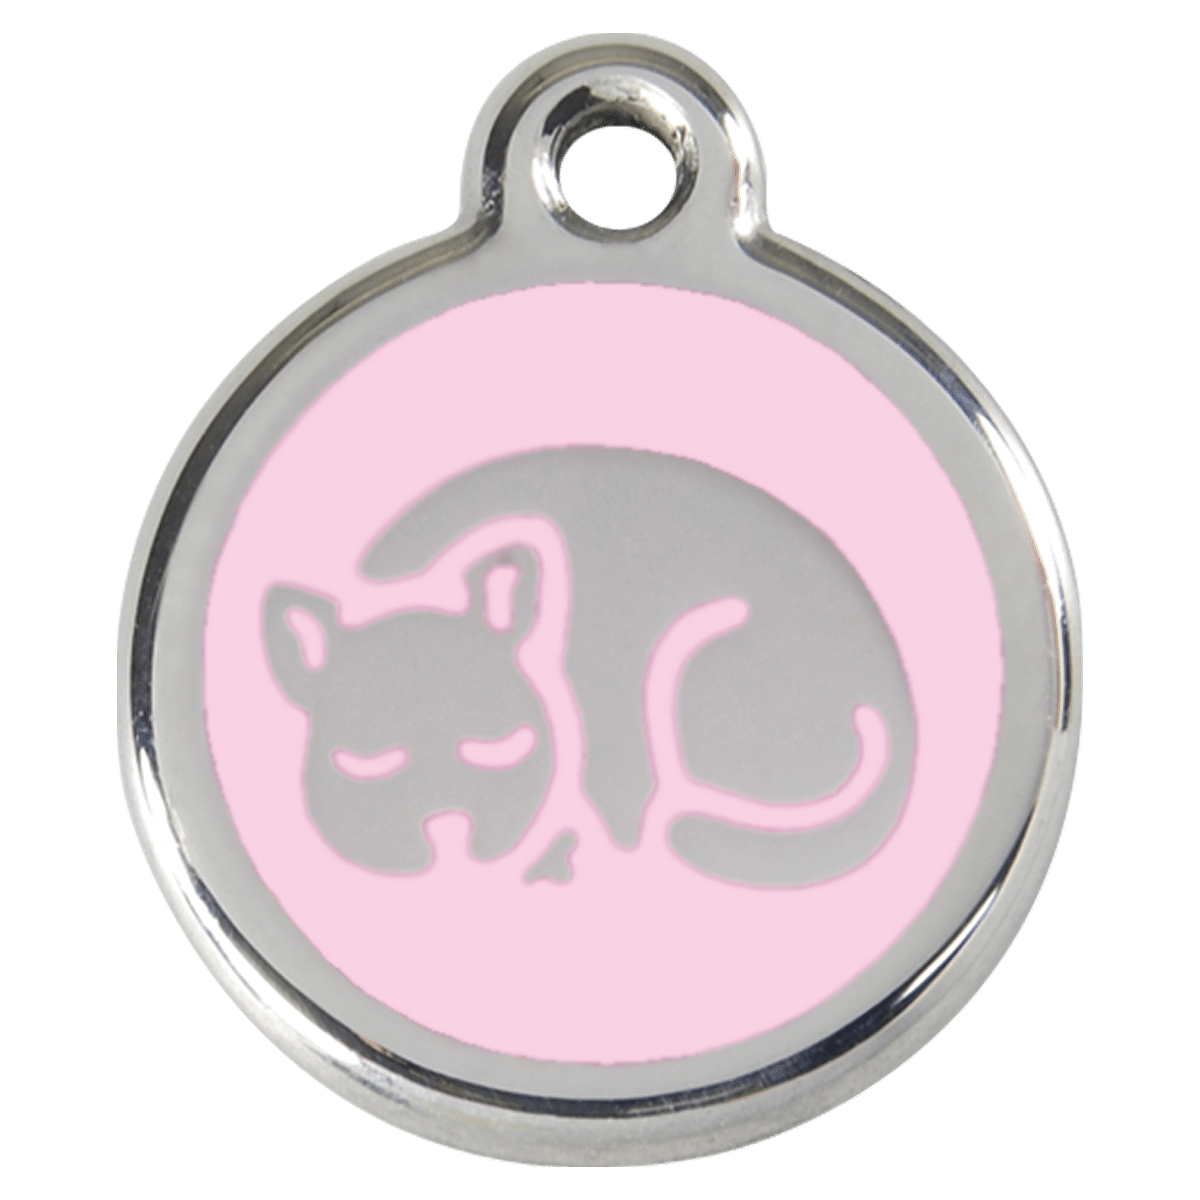 Gullig id-bricka i rosa med en katt